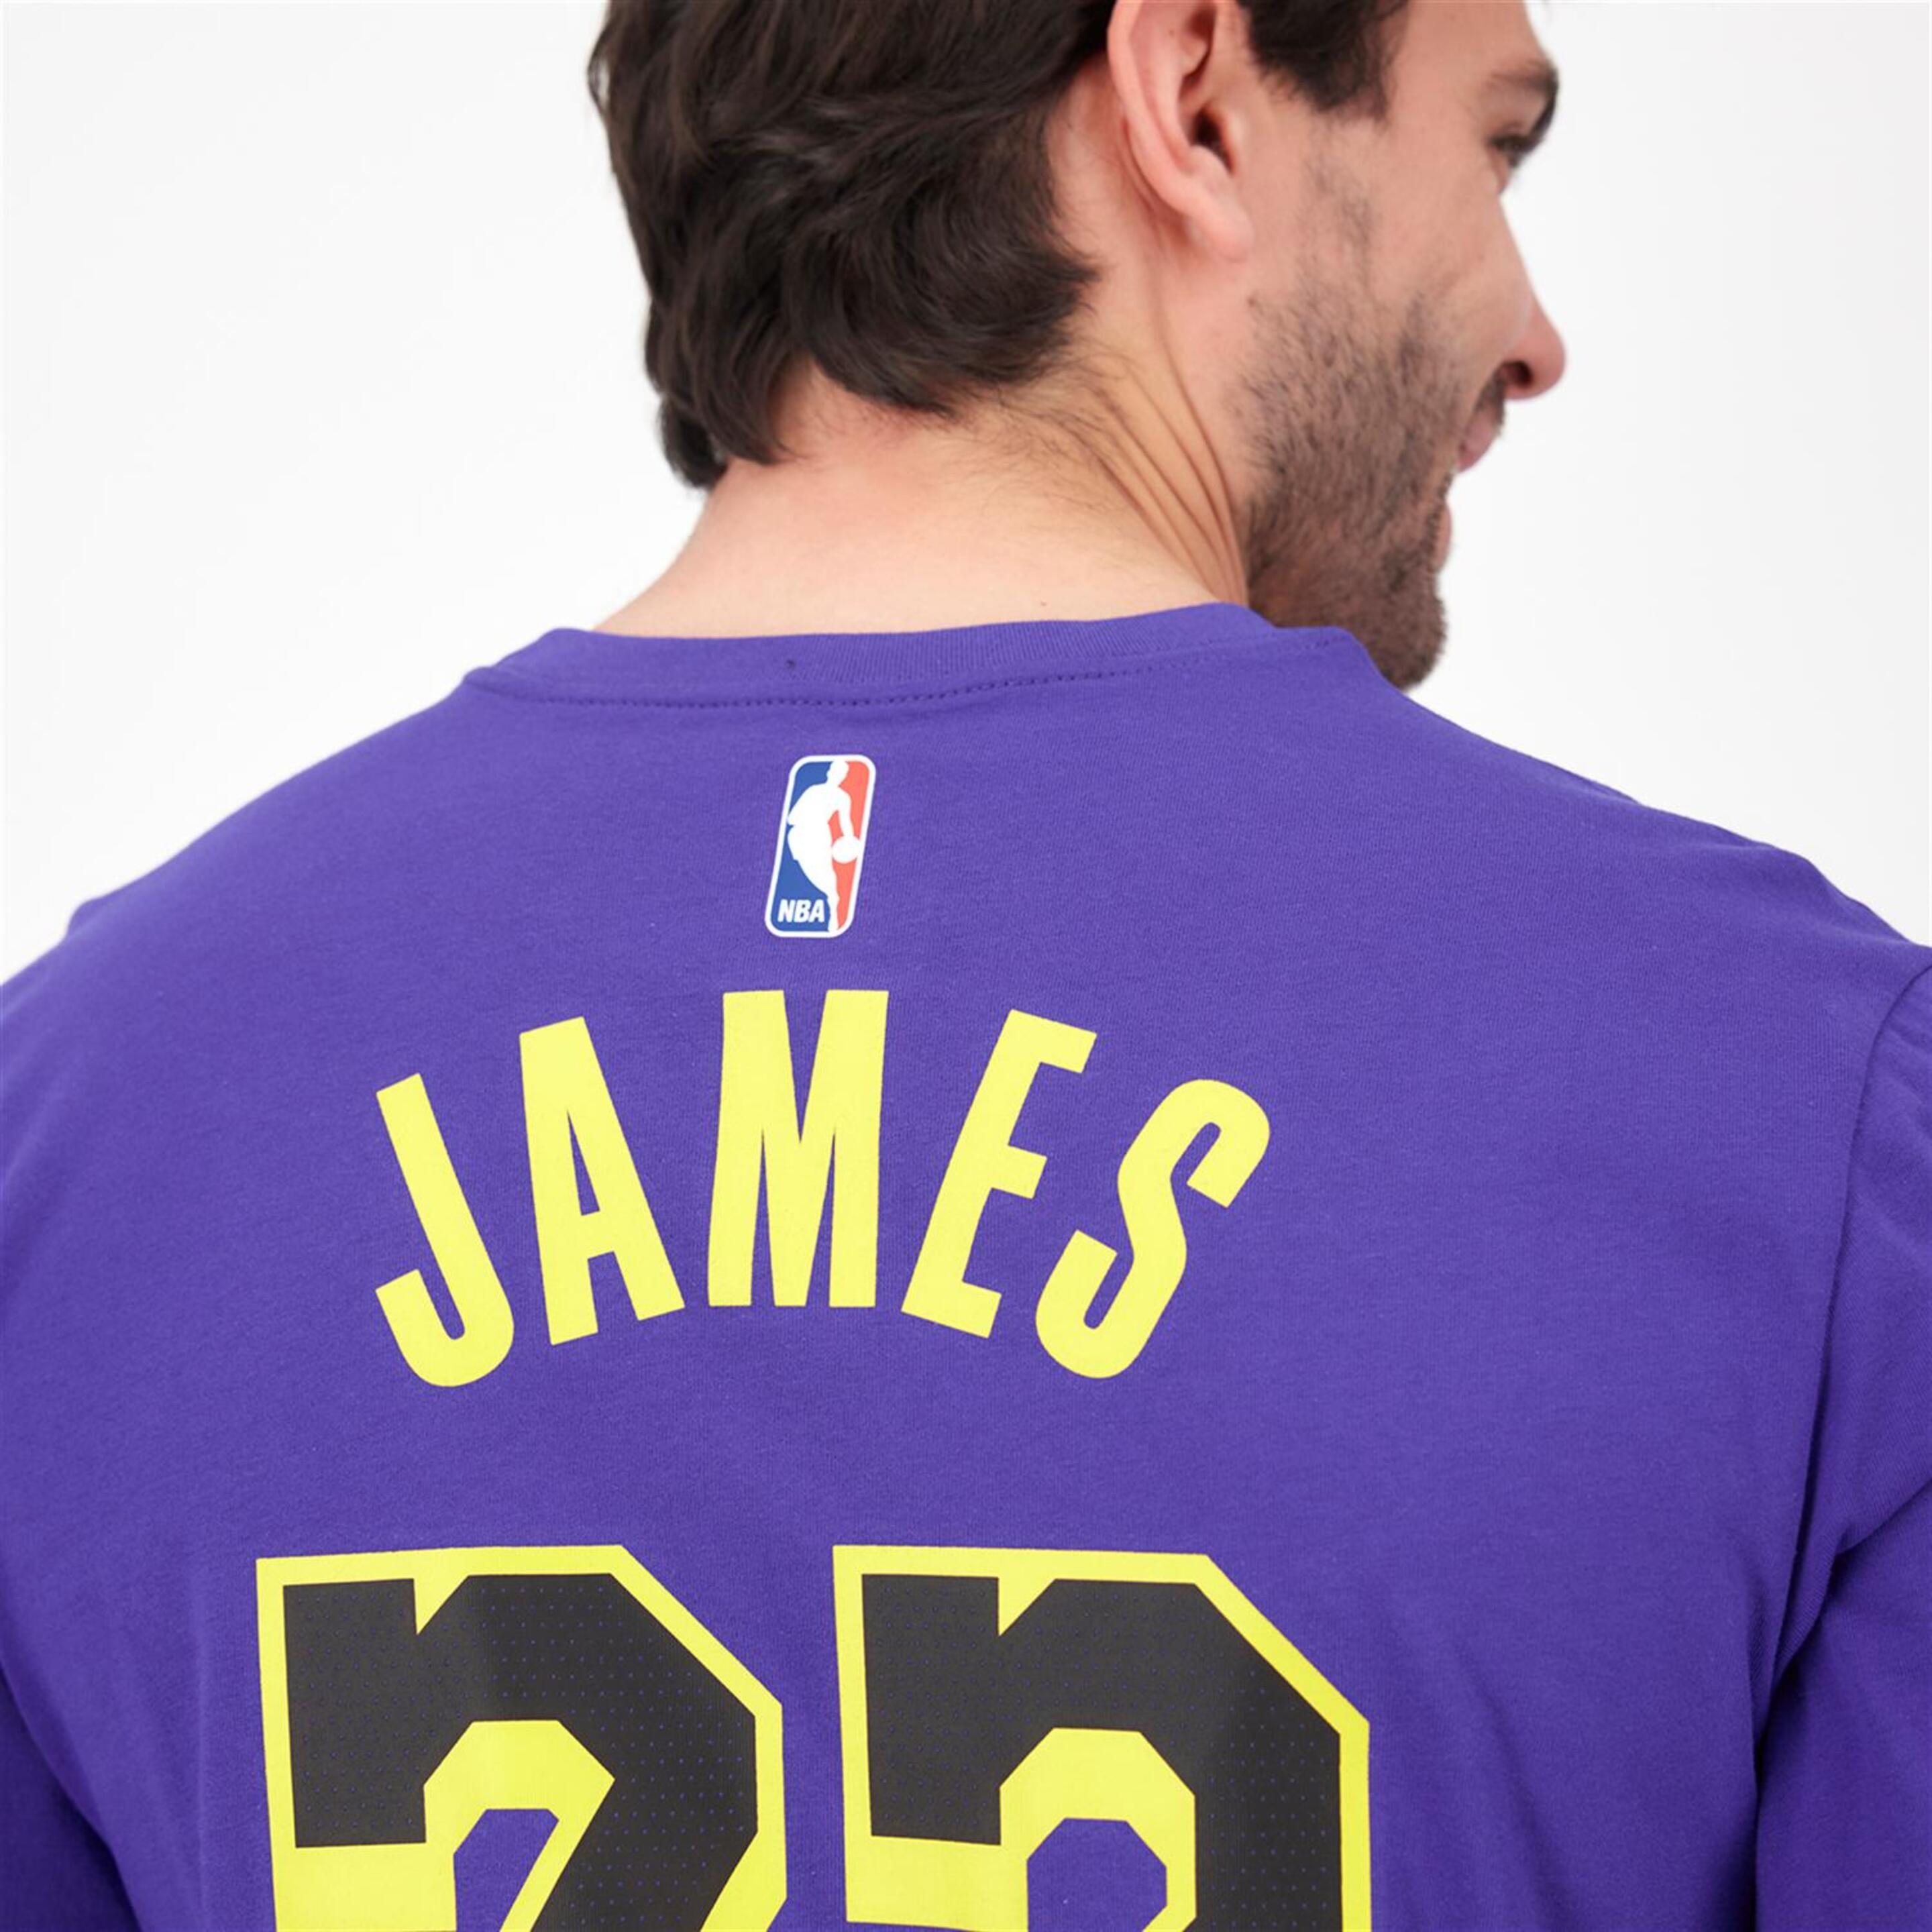 Nike L James Lakers